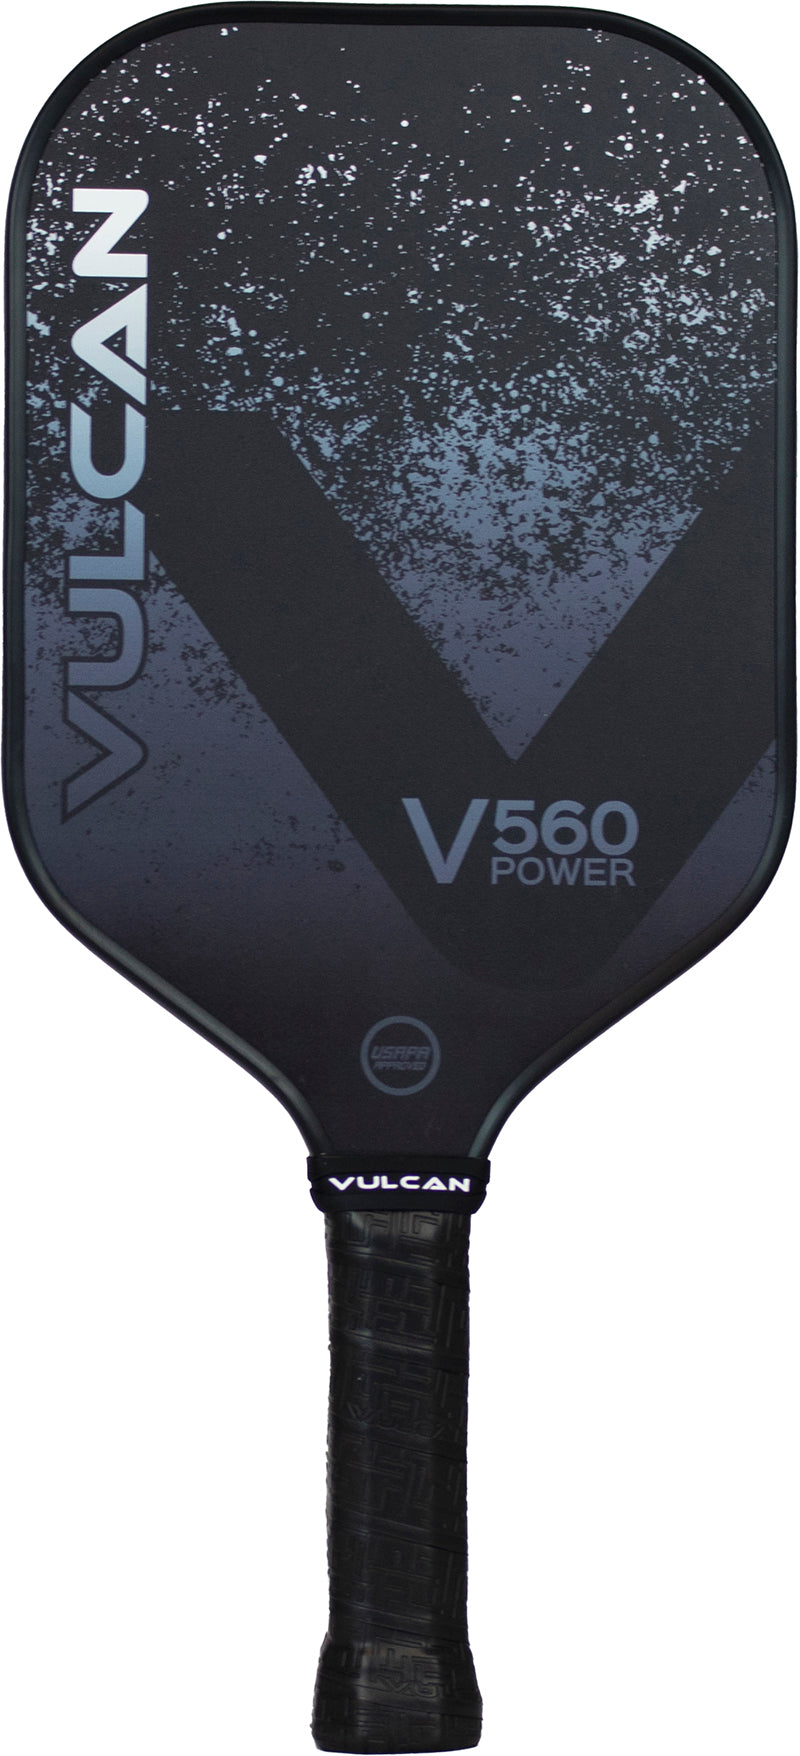 Vulcan V560 Power Pickleball Paddle -Smoke